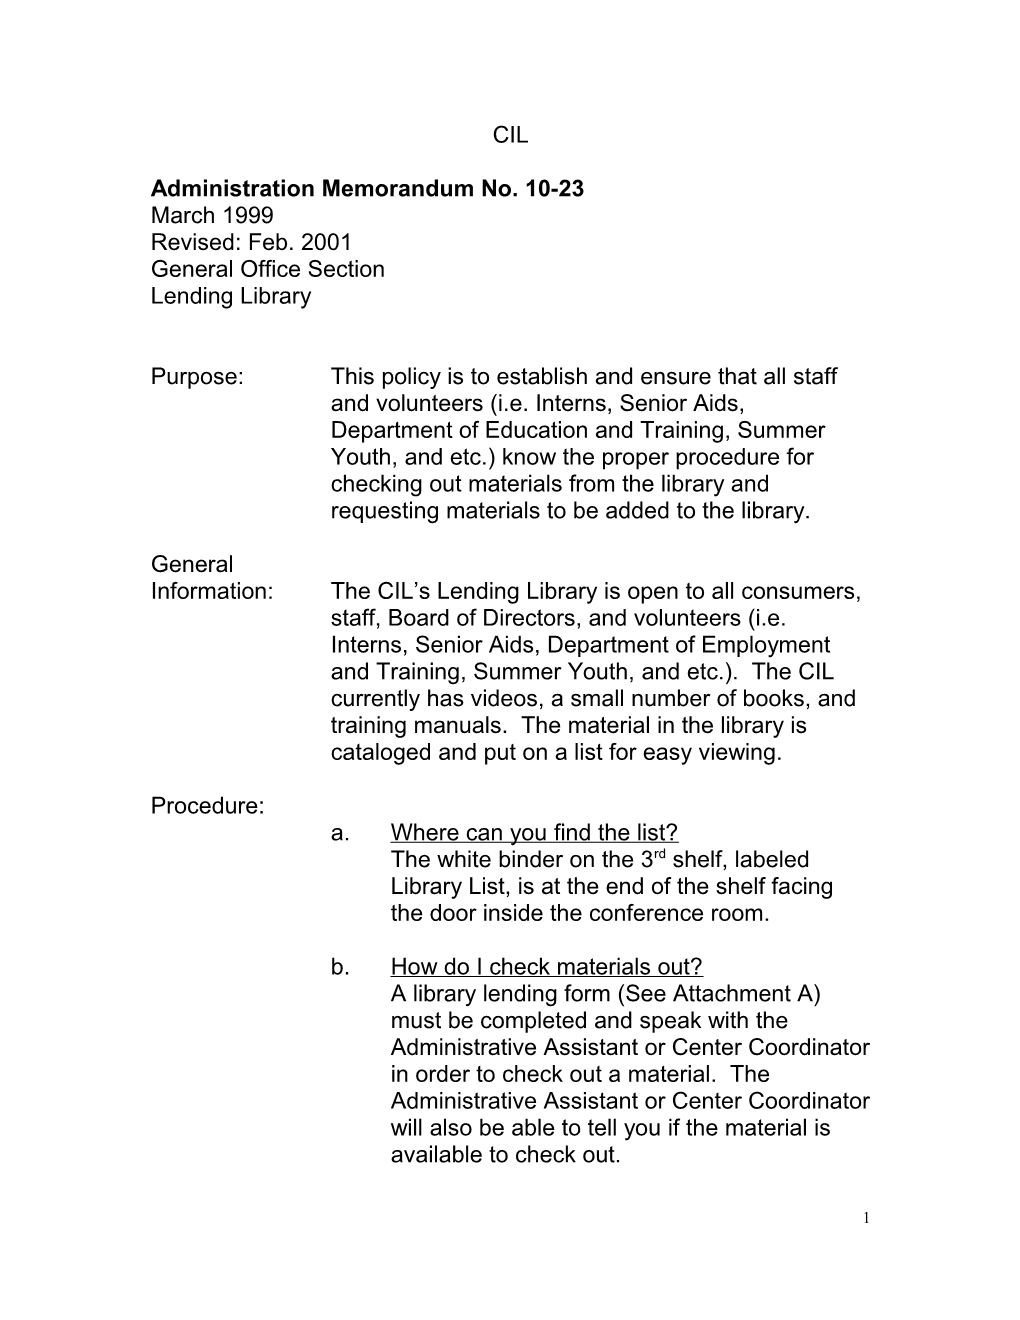 Administration Memorandum No. 10-23